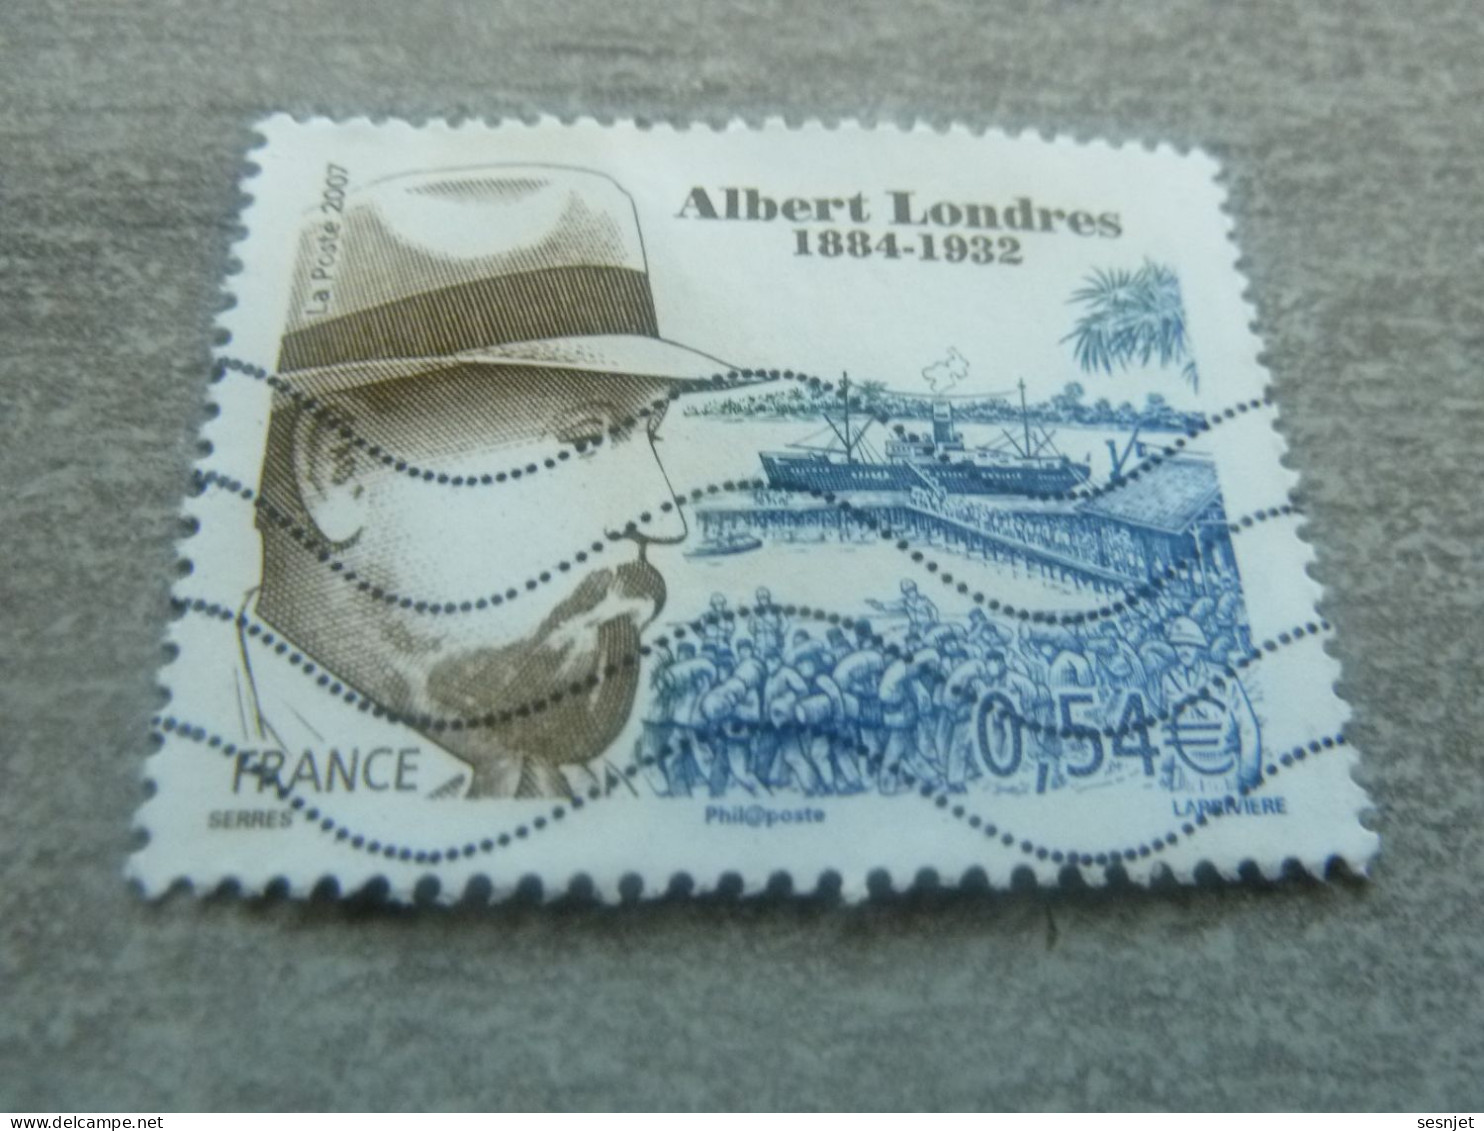 Albert Londres (1884-1932) Journaliste - 0.54 € - Yt 4027 - Multicolore - Oblitéré - Année 2007 - - Used Stamps